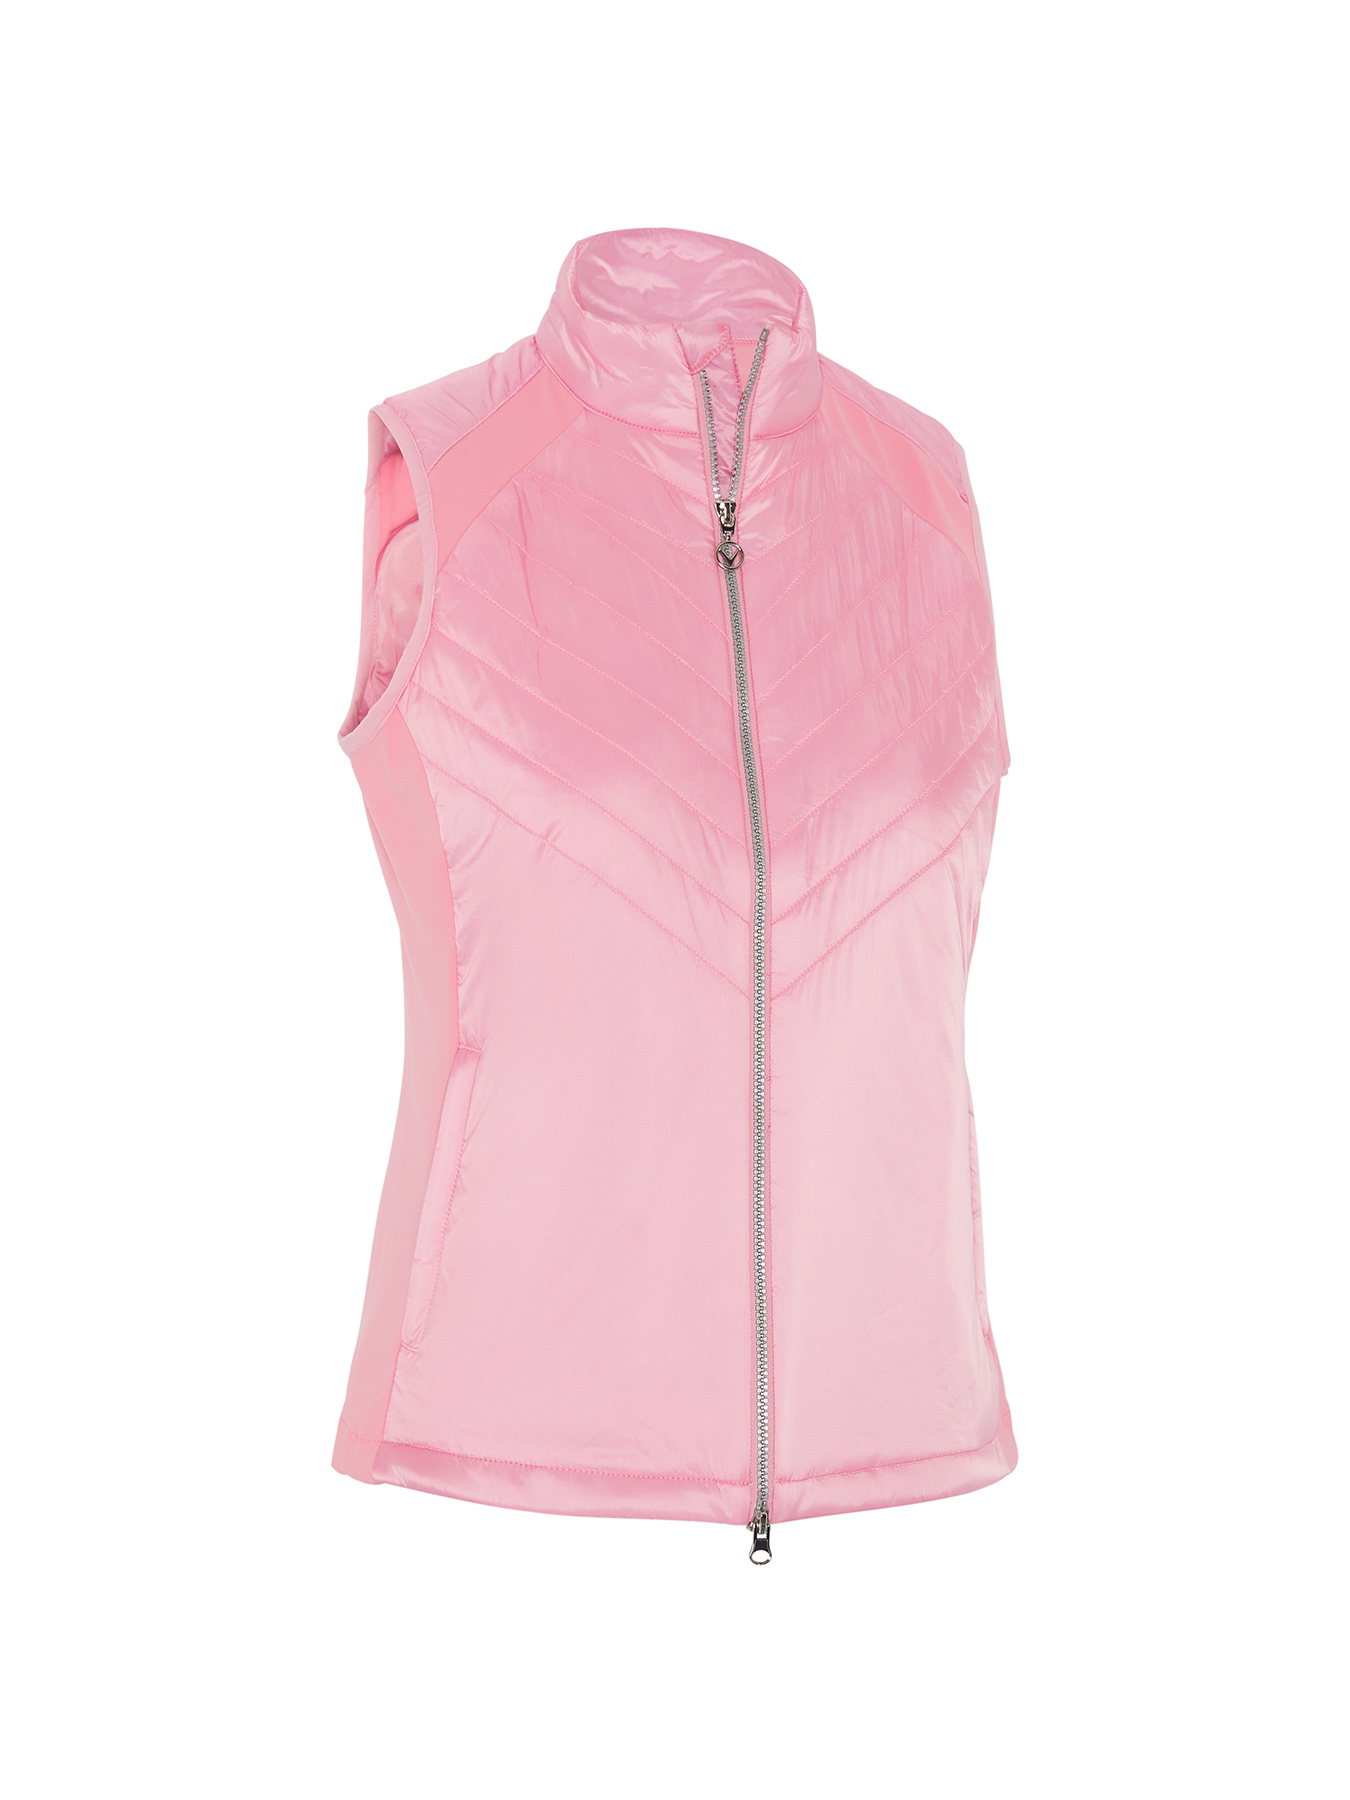 Callaway Chev Primaloft dámská golfová vesta, světle růžová, vel. S